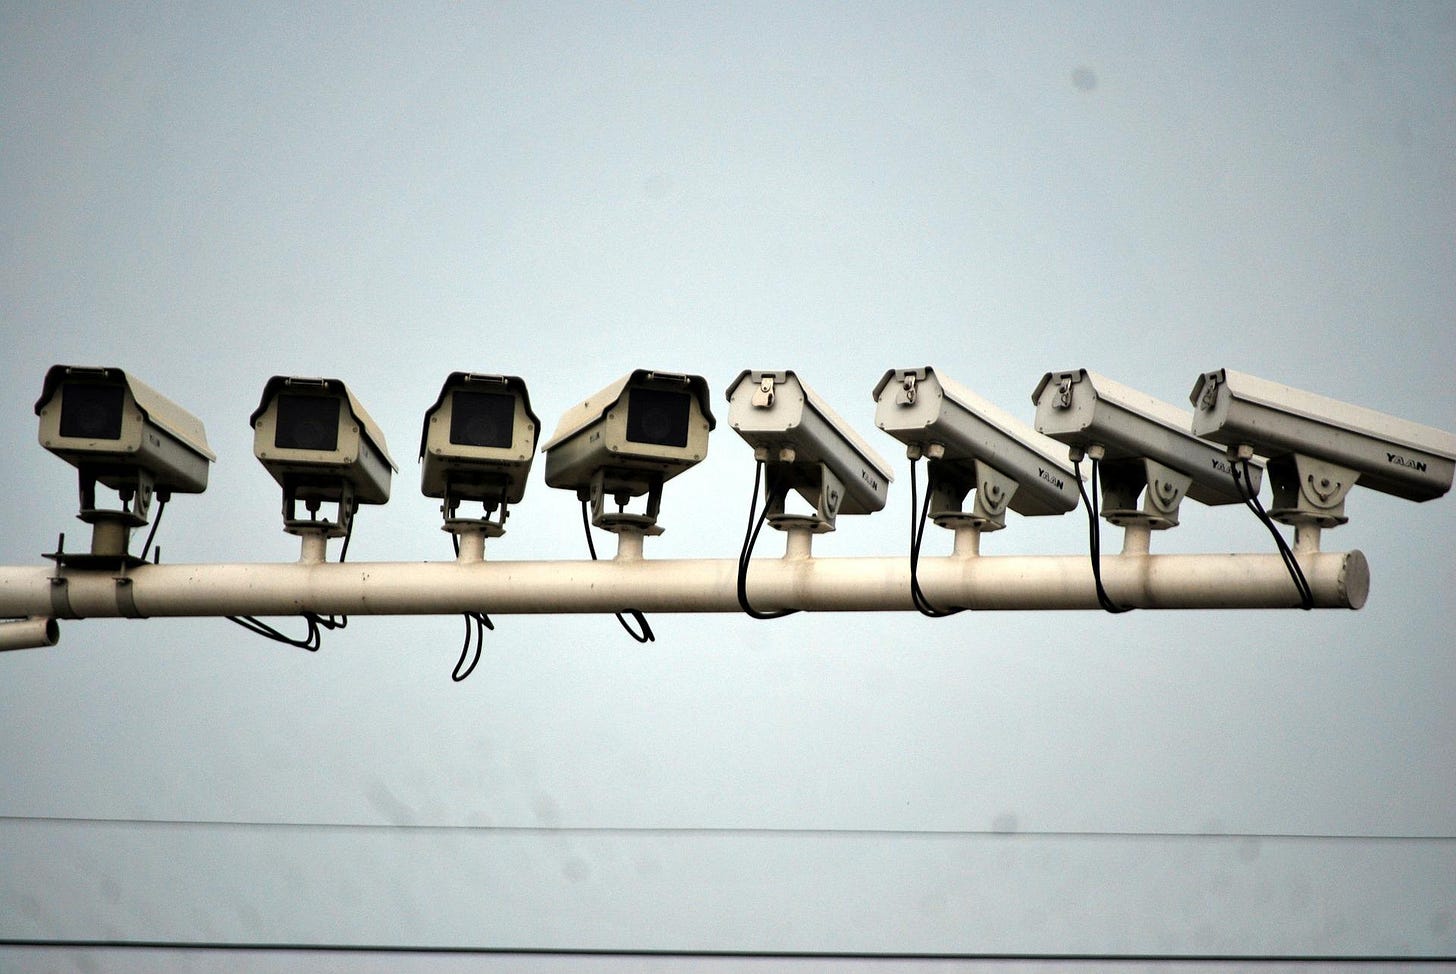 A line of surveillance cameras